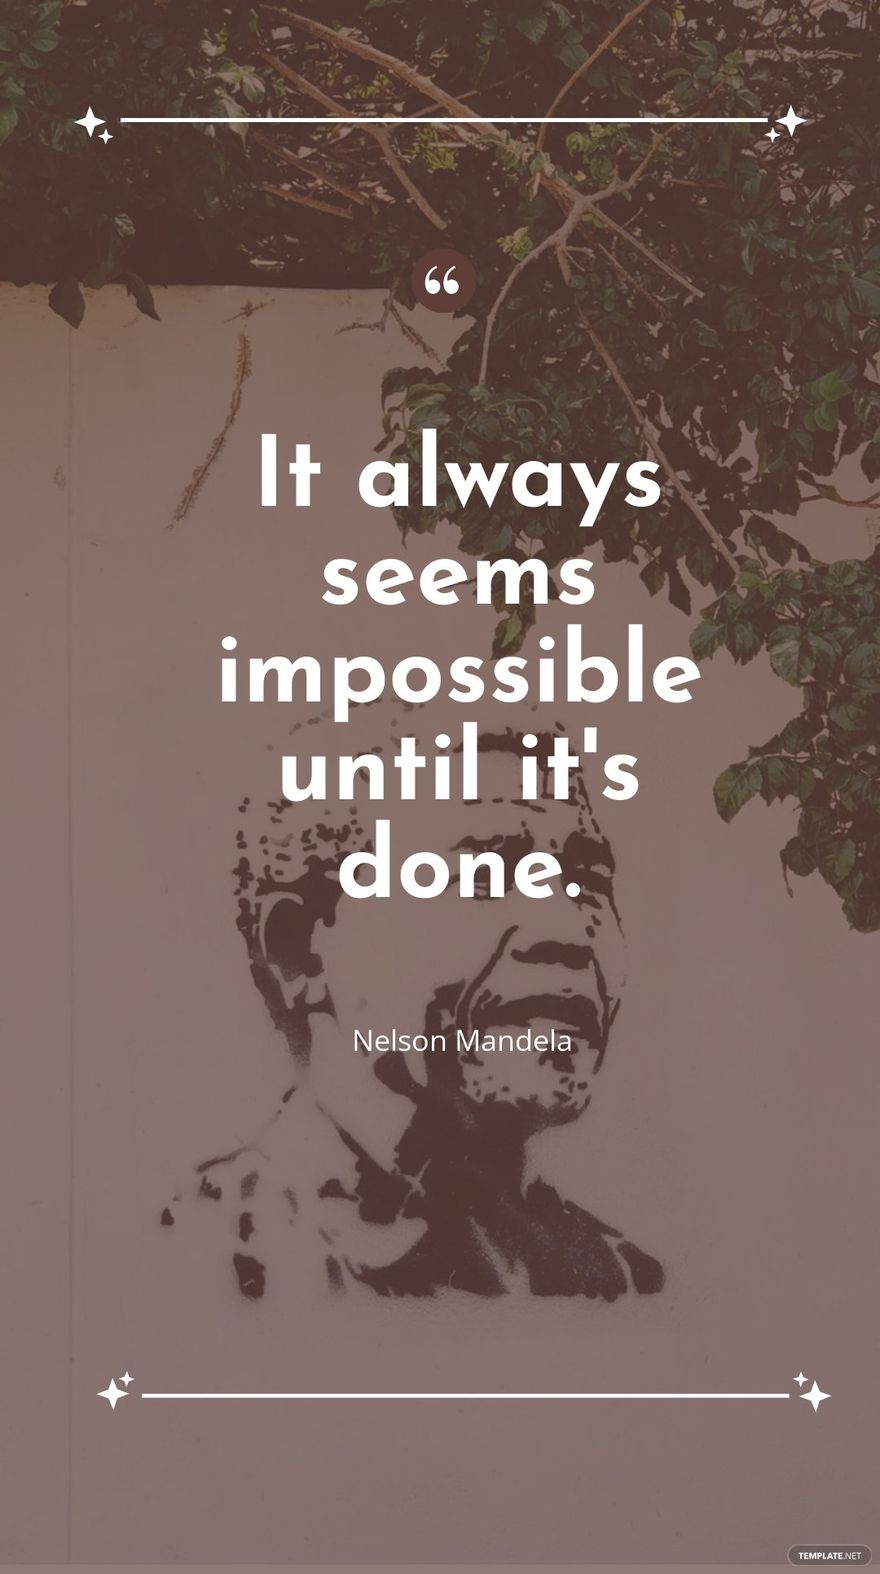 Nelson Mandela - It always seems impossible until it's done in JPG